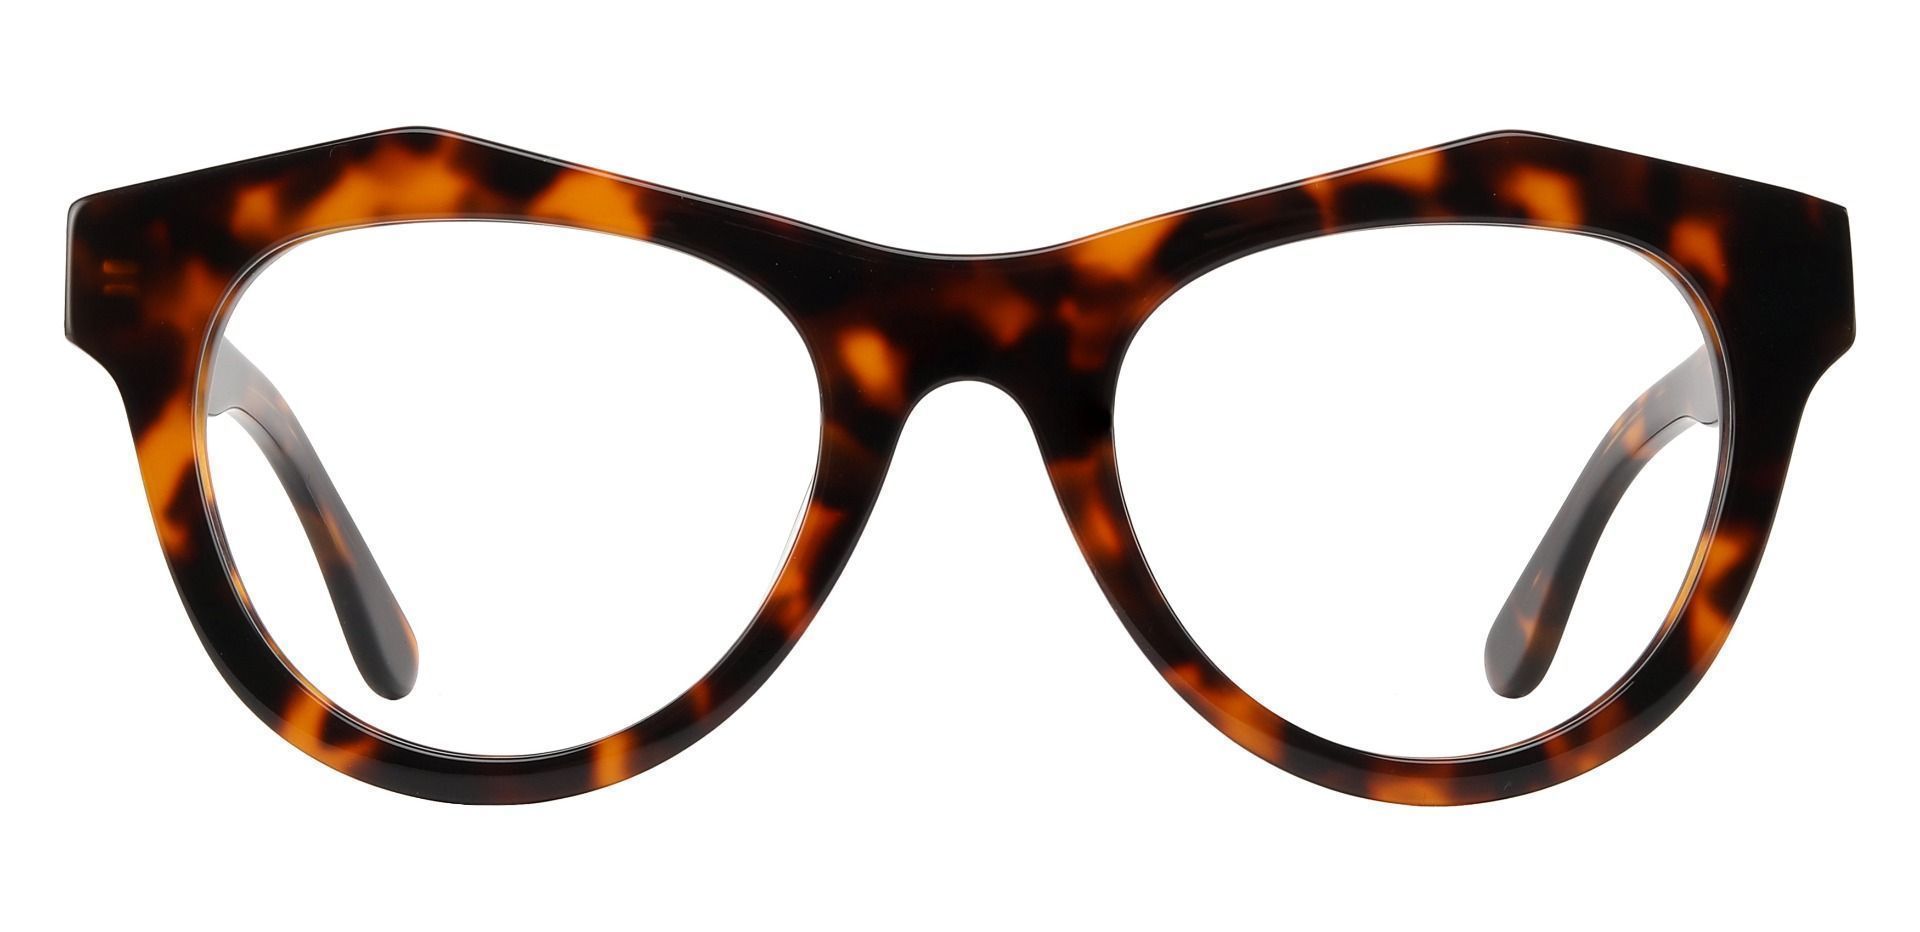 Jensen Geometric Prescription Glasses - Tortoise | Women's Eyeglasses ...